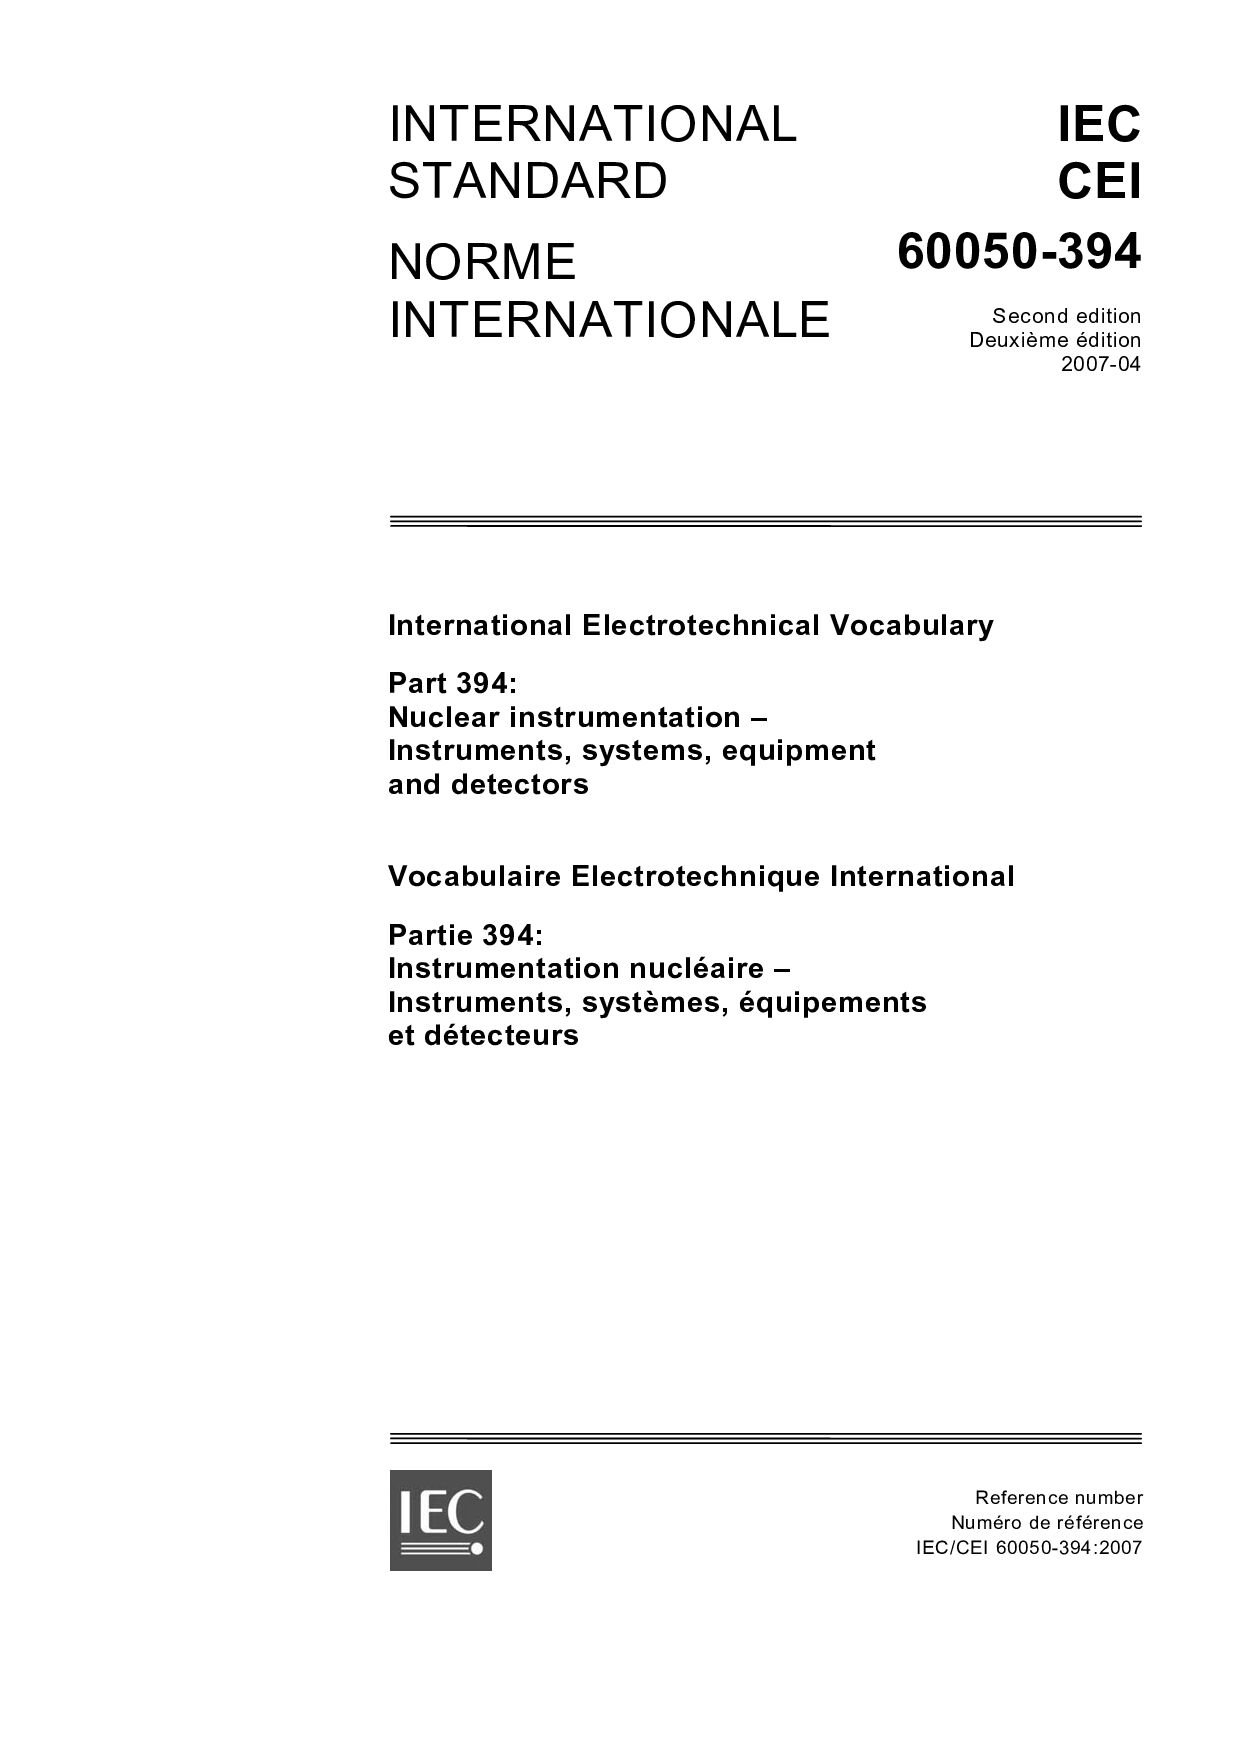 IEC 60050-394:2007